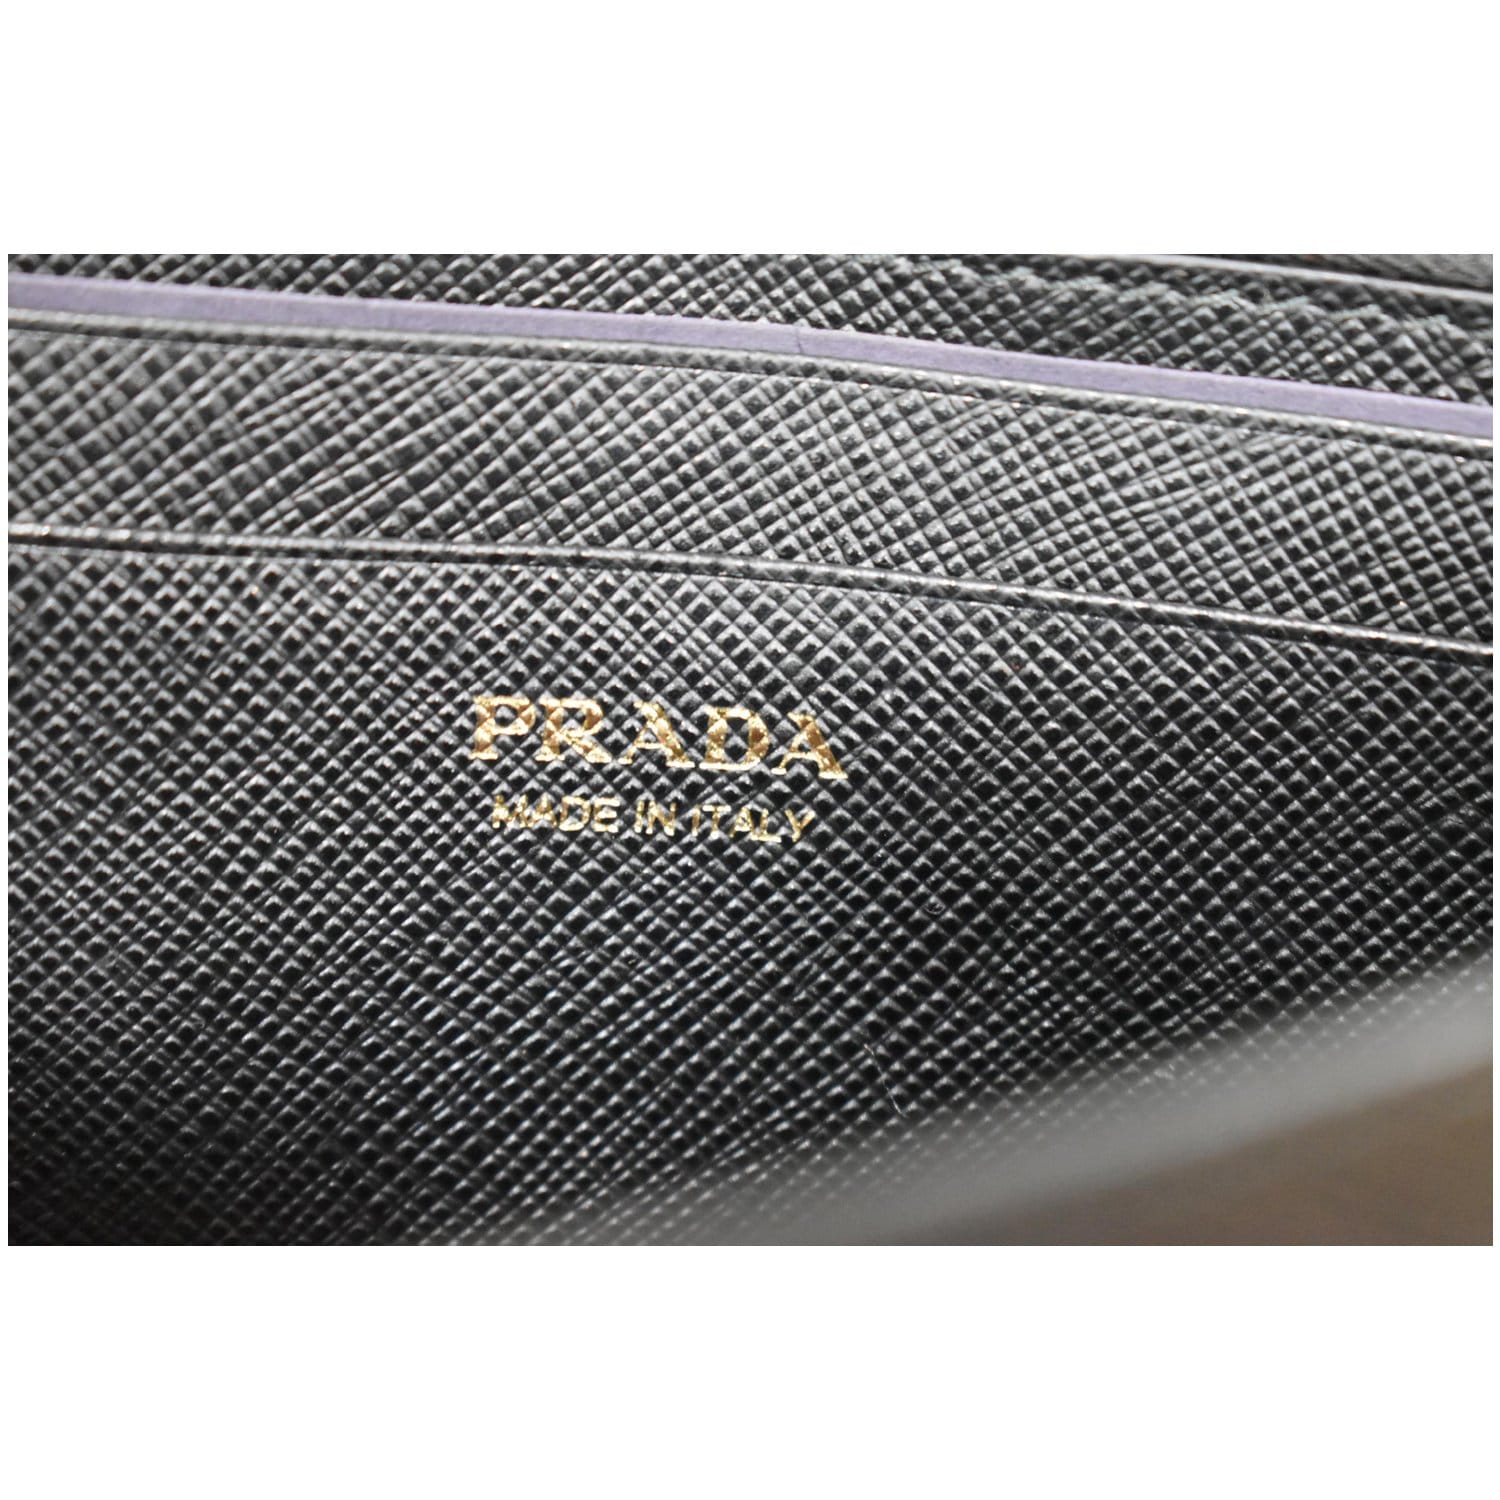 Saffiano Leather Mini Bag Chain tarnished? : r/Prada